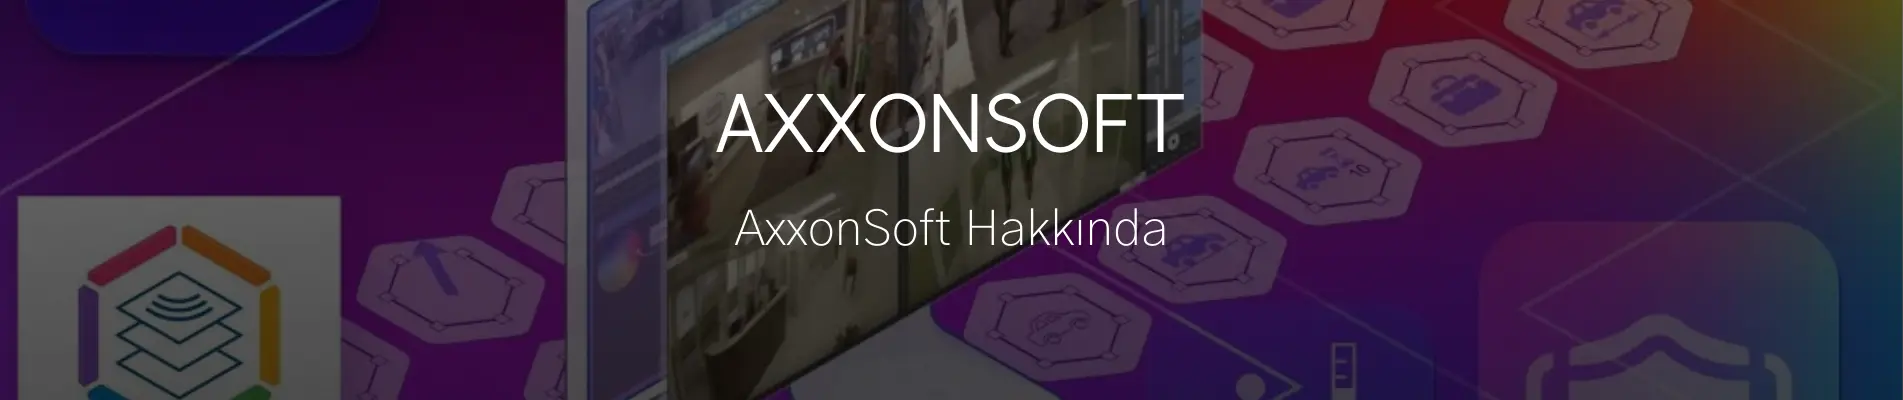 AxxonSoft hakkında